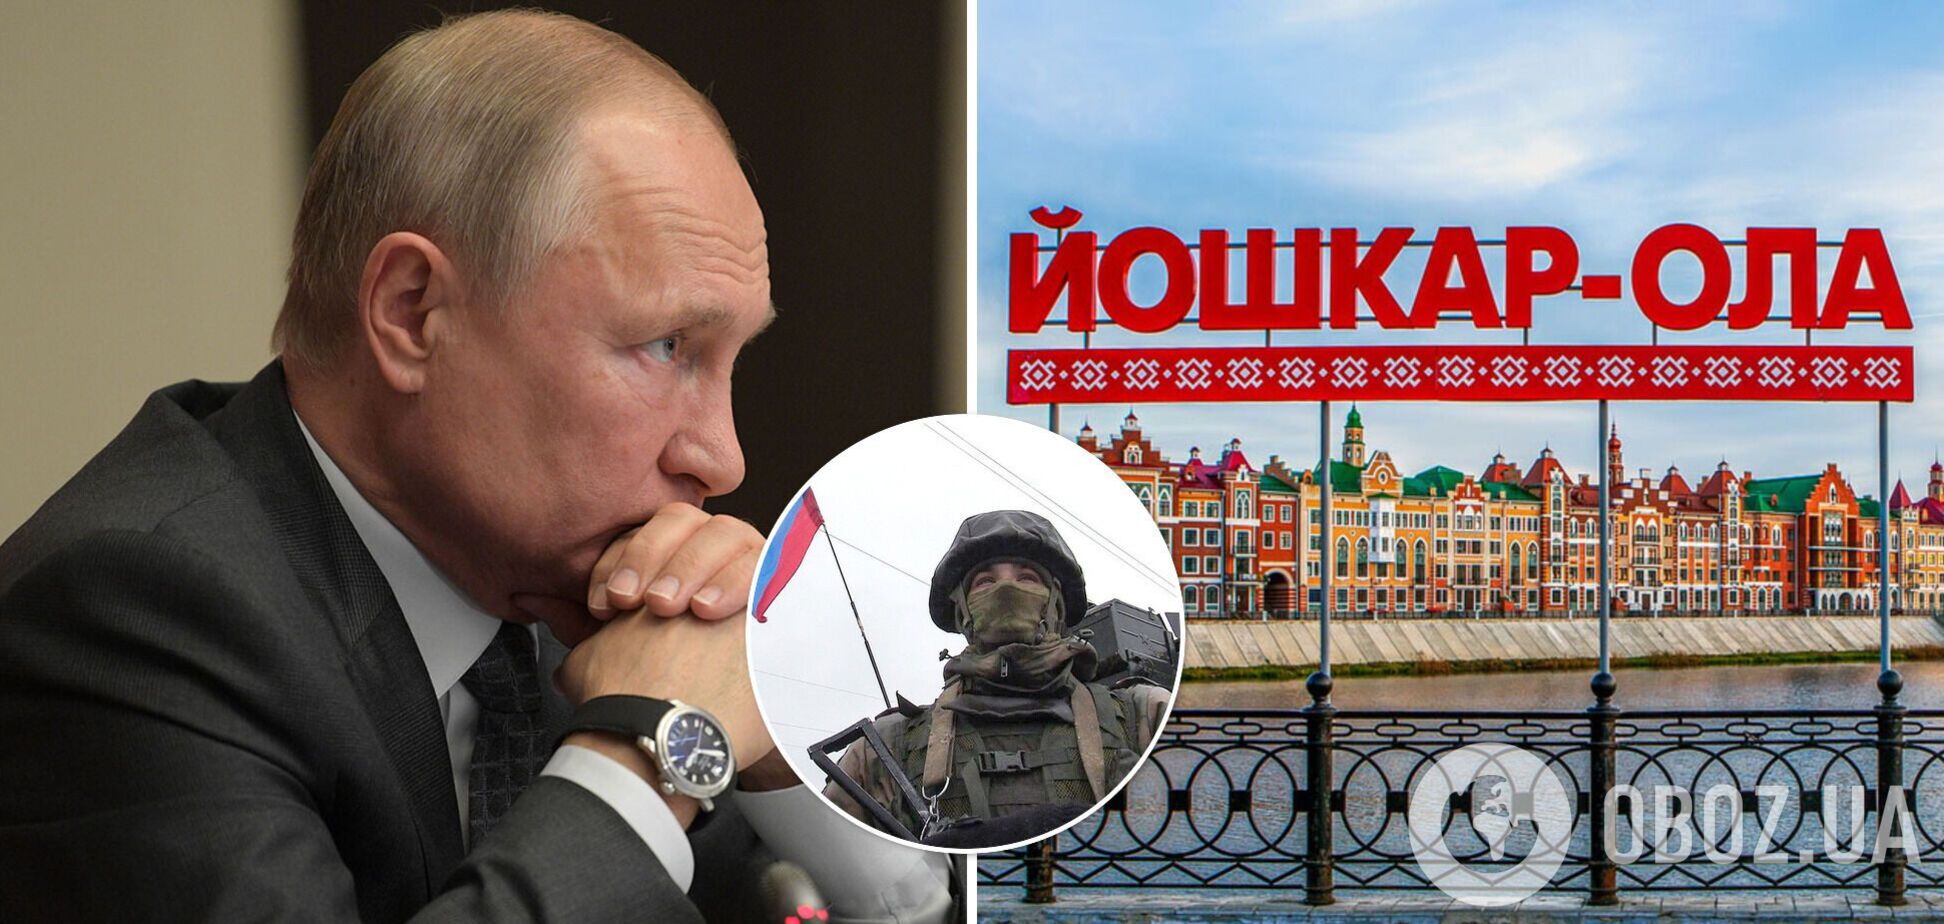 Местные депутаты выразили недовольство действиями Путина